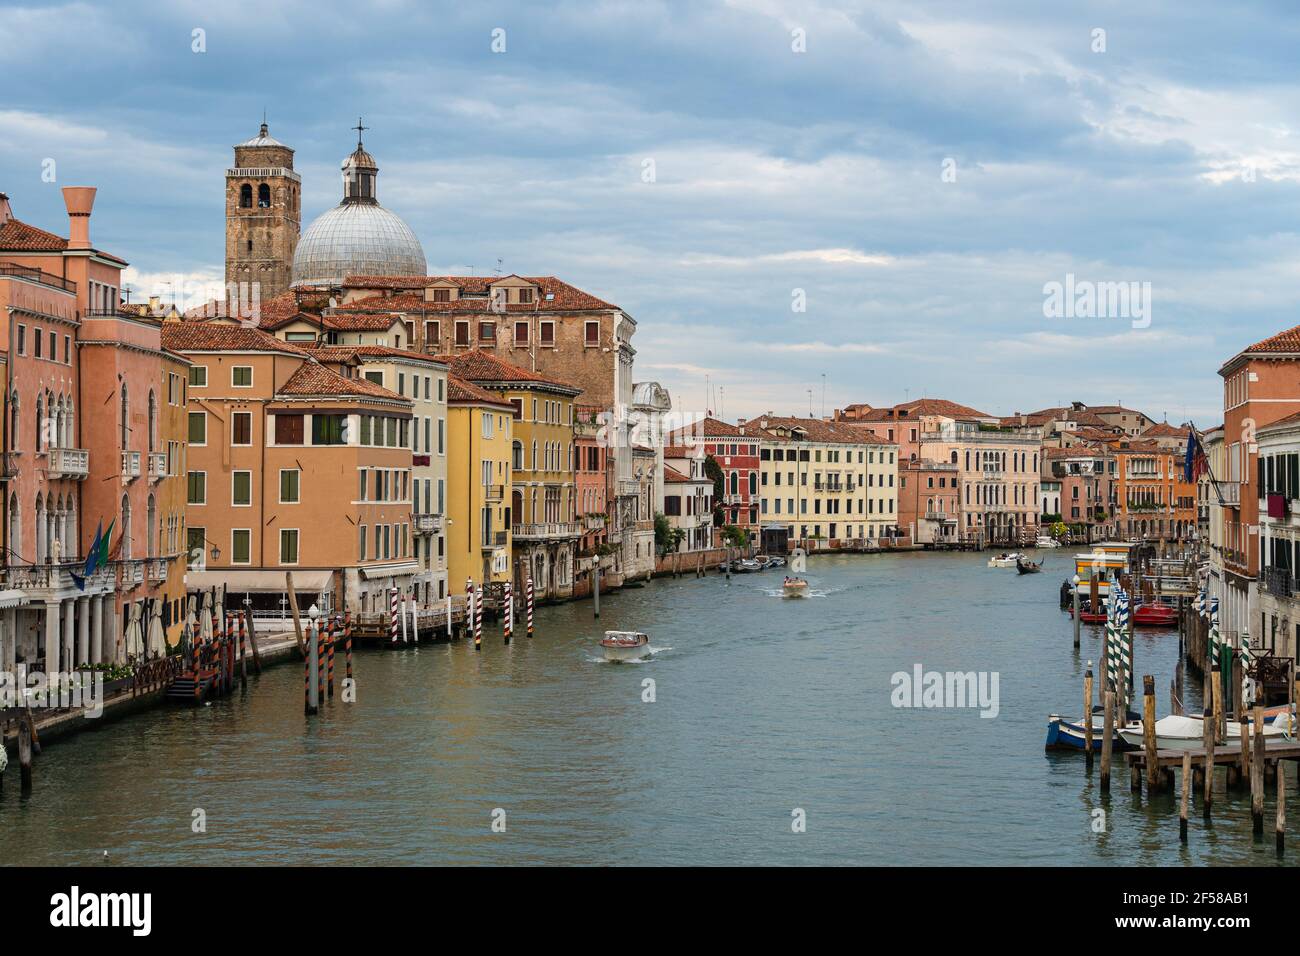 Dramatischer Blick auf den berühmten Canal Grande in Venedig, Itlay, an einem bewölkten Tag Stockfoto